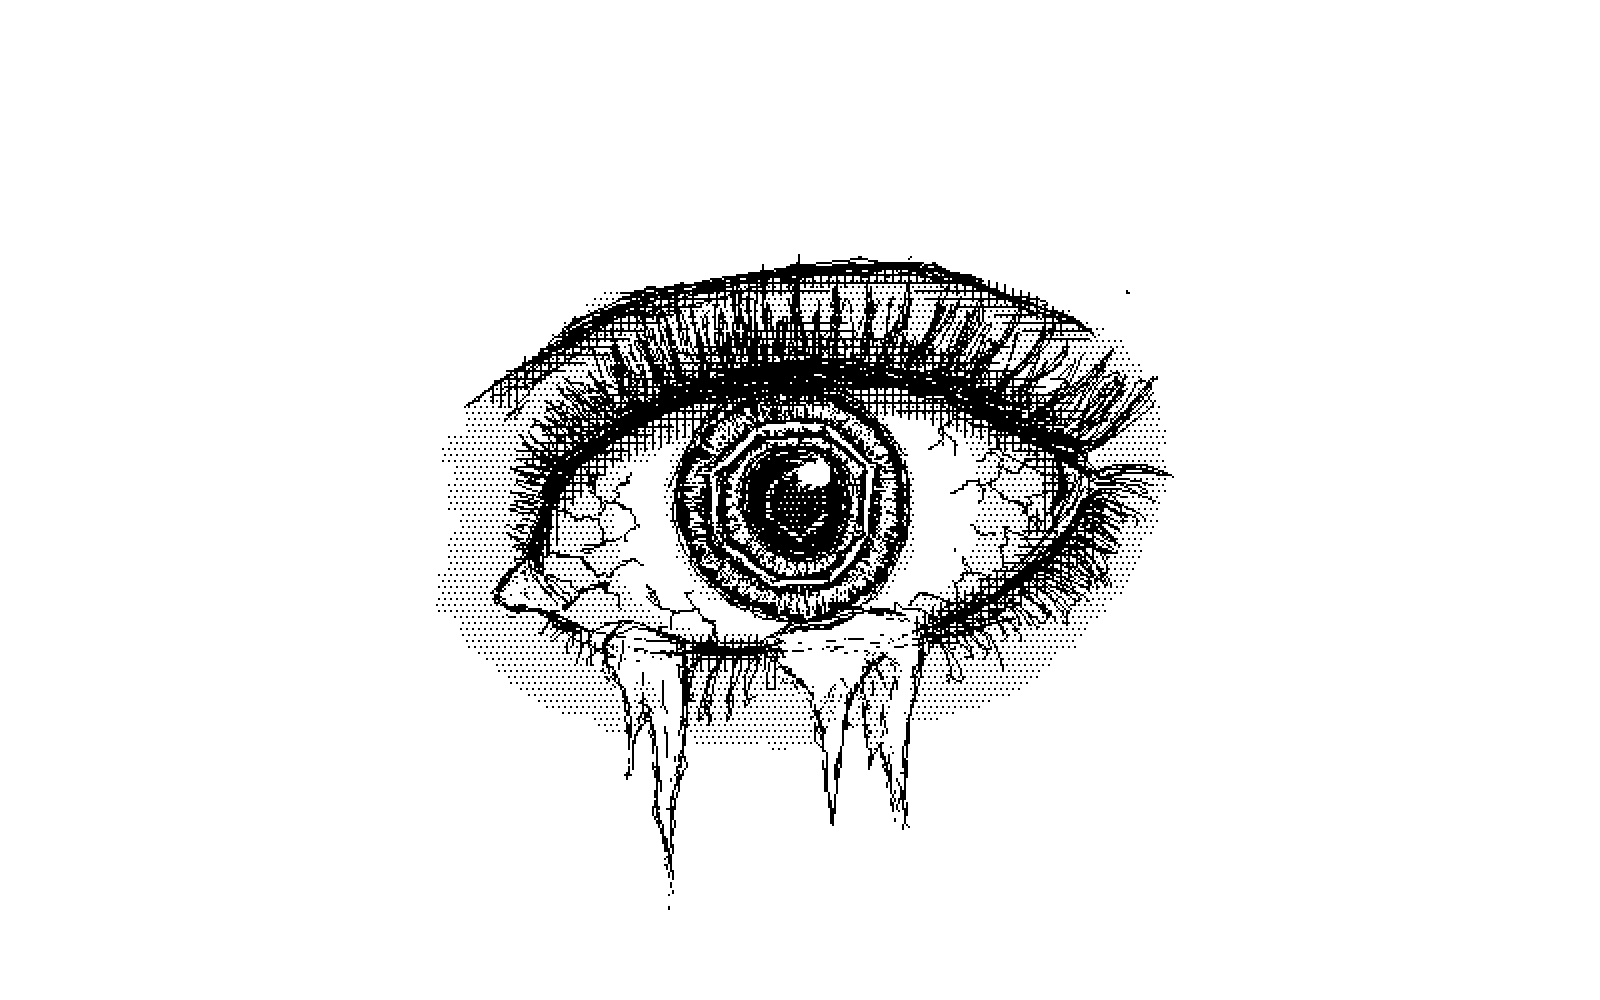 an eye with frozen tears